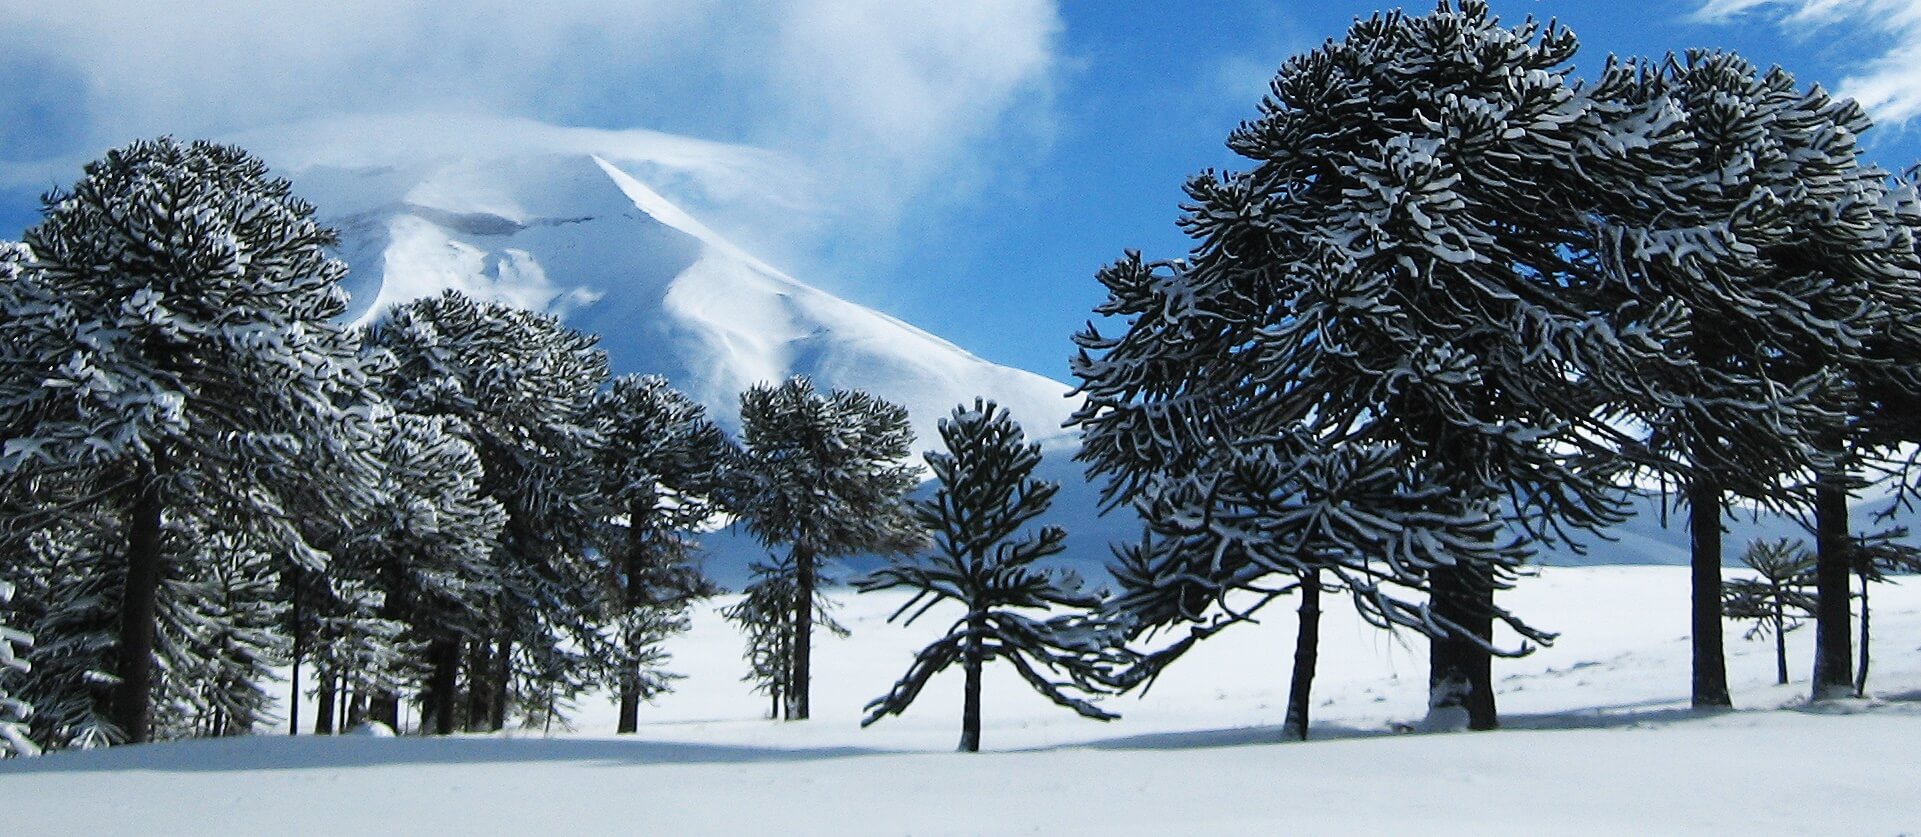 Corralco ski center Chile